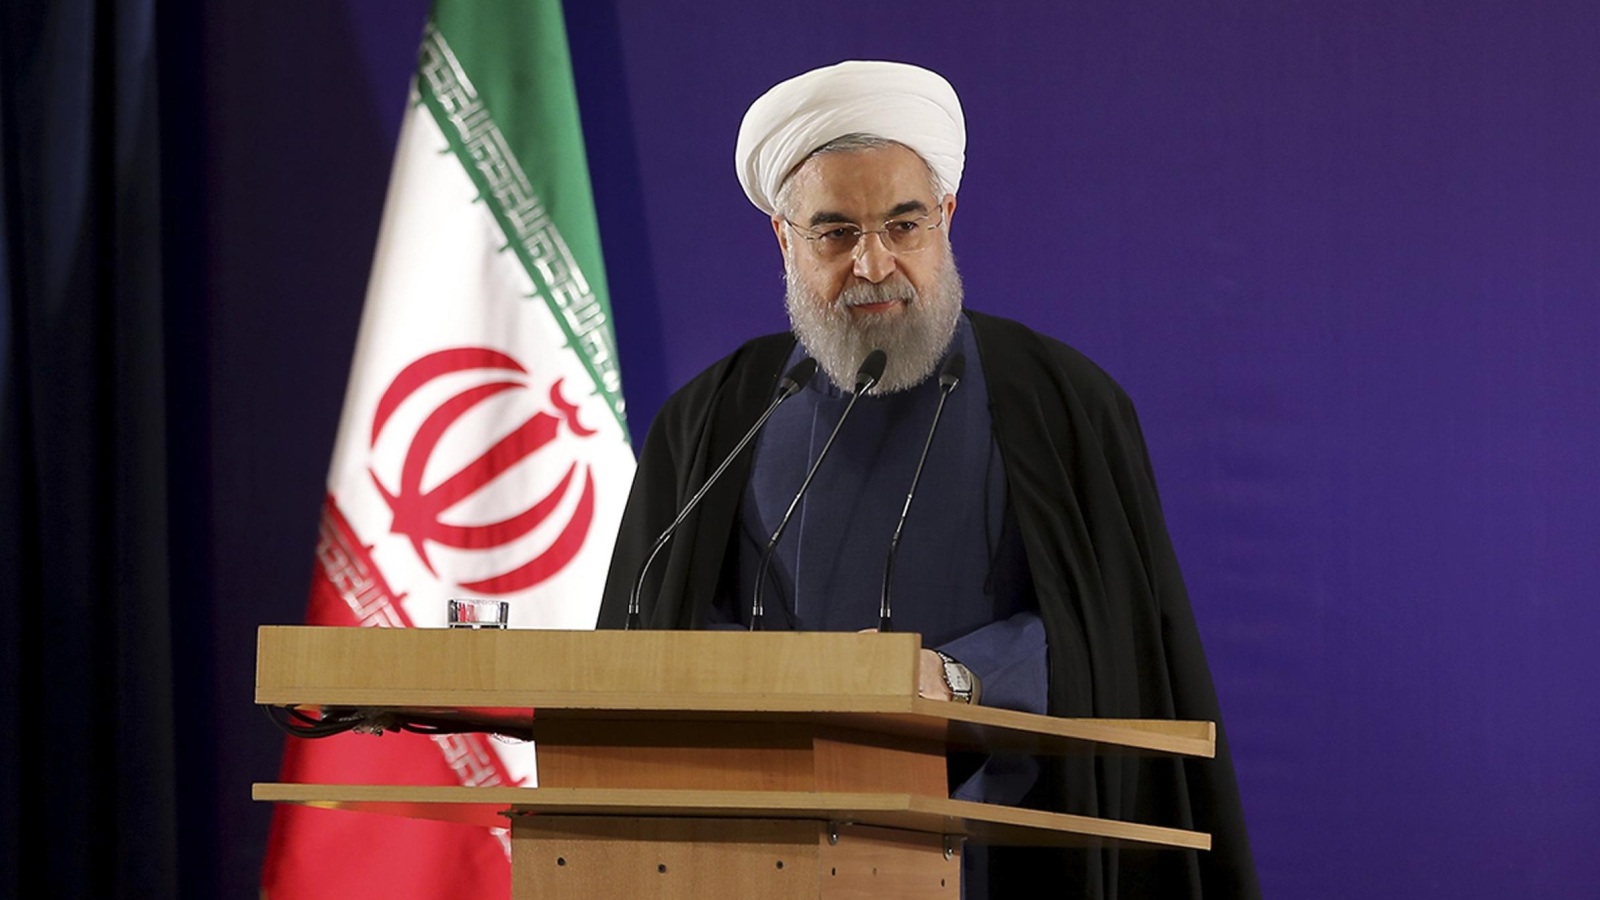 الرئيس الإيراني حسن روحاني يخوض رئاسيات أيار 2017 للحصول على ولاية ثانية أسوشيتد برس.jpeg